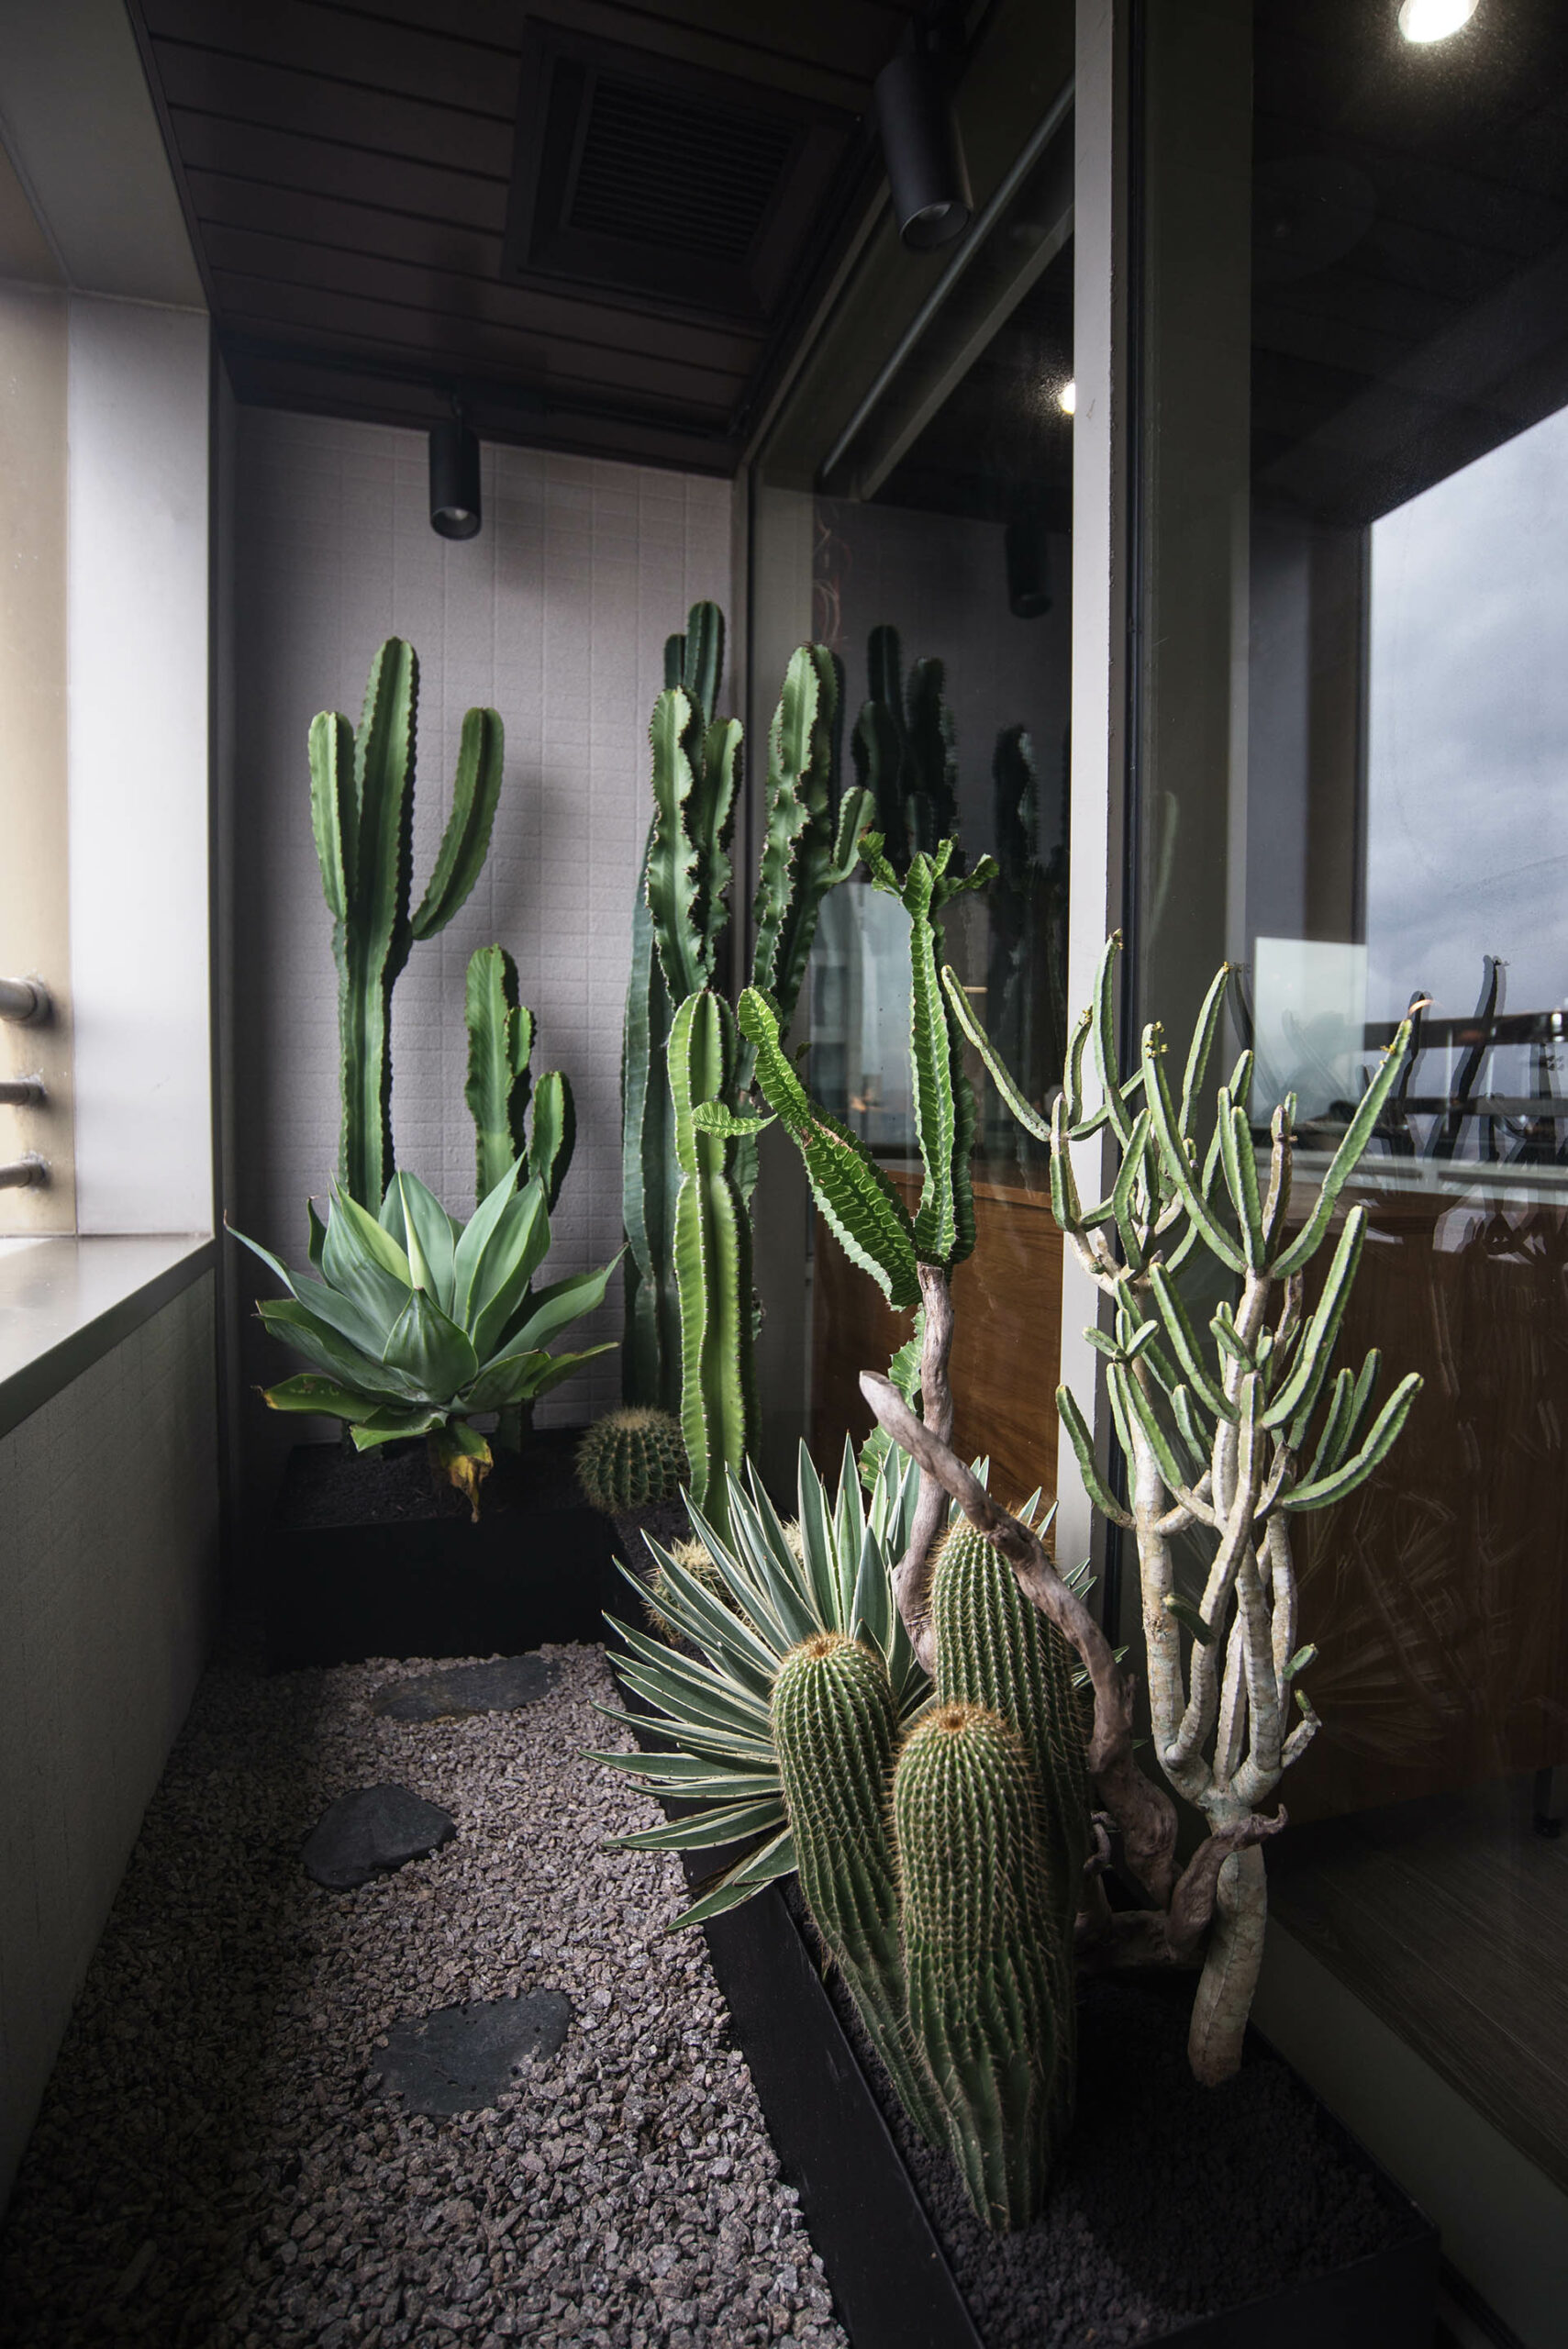 OURA 軌道燈 - 室內植物燈 私人招待會所 質感綠景陽台設計4 scaled